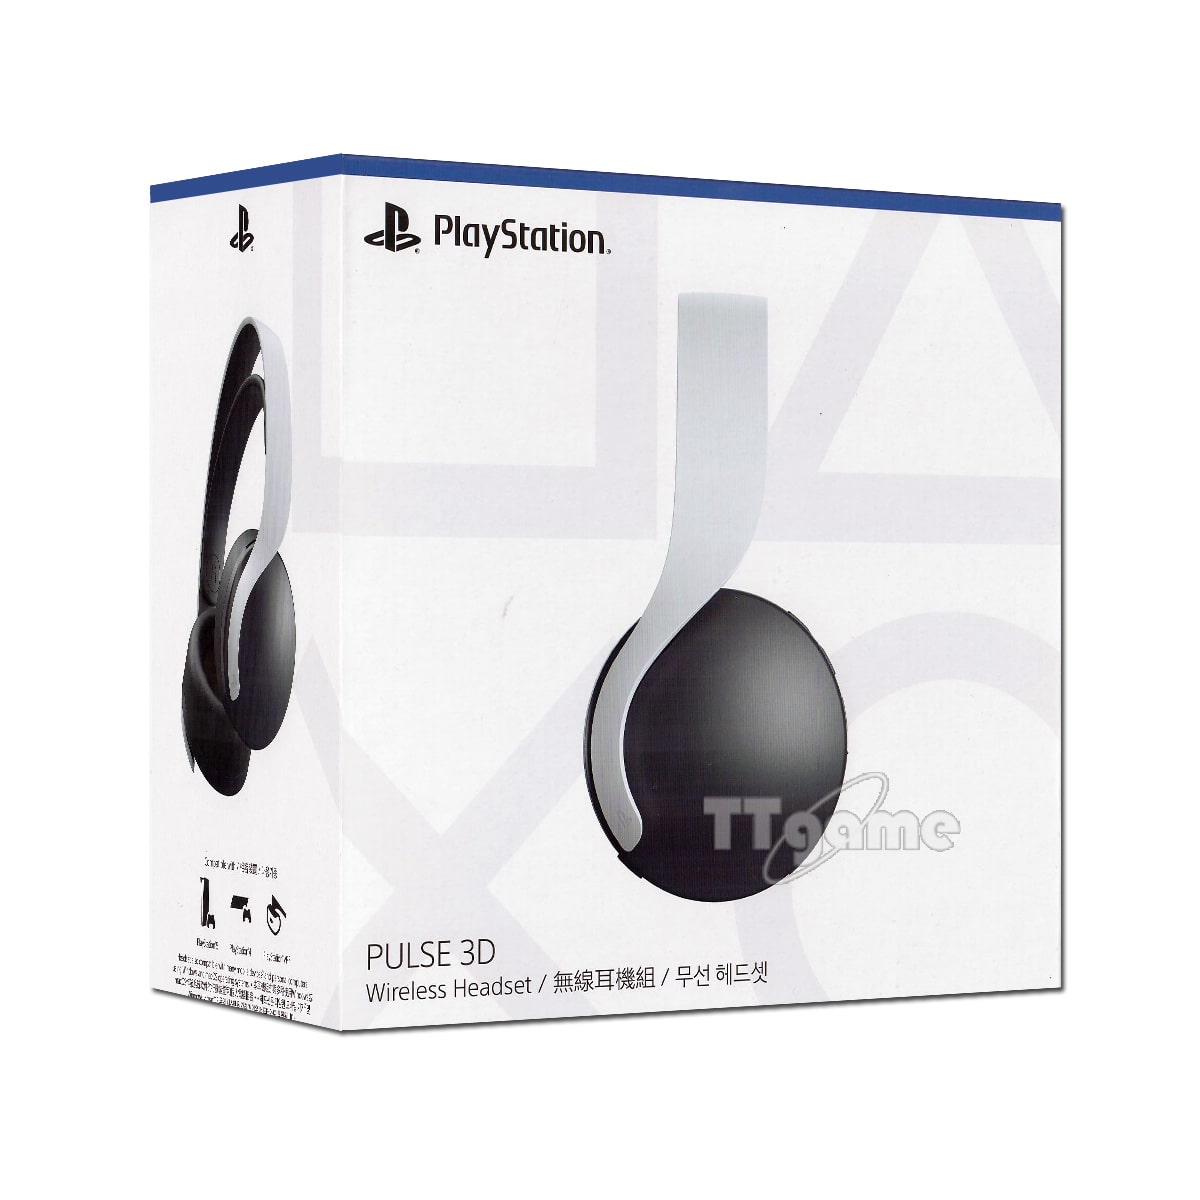 PS5 소니정품 PULSE 3D 펄스 무선헤드셋 - 화이트